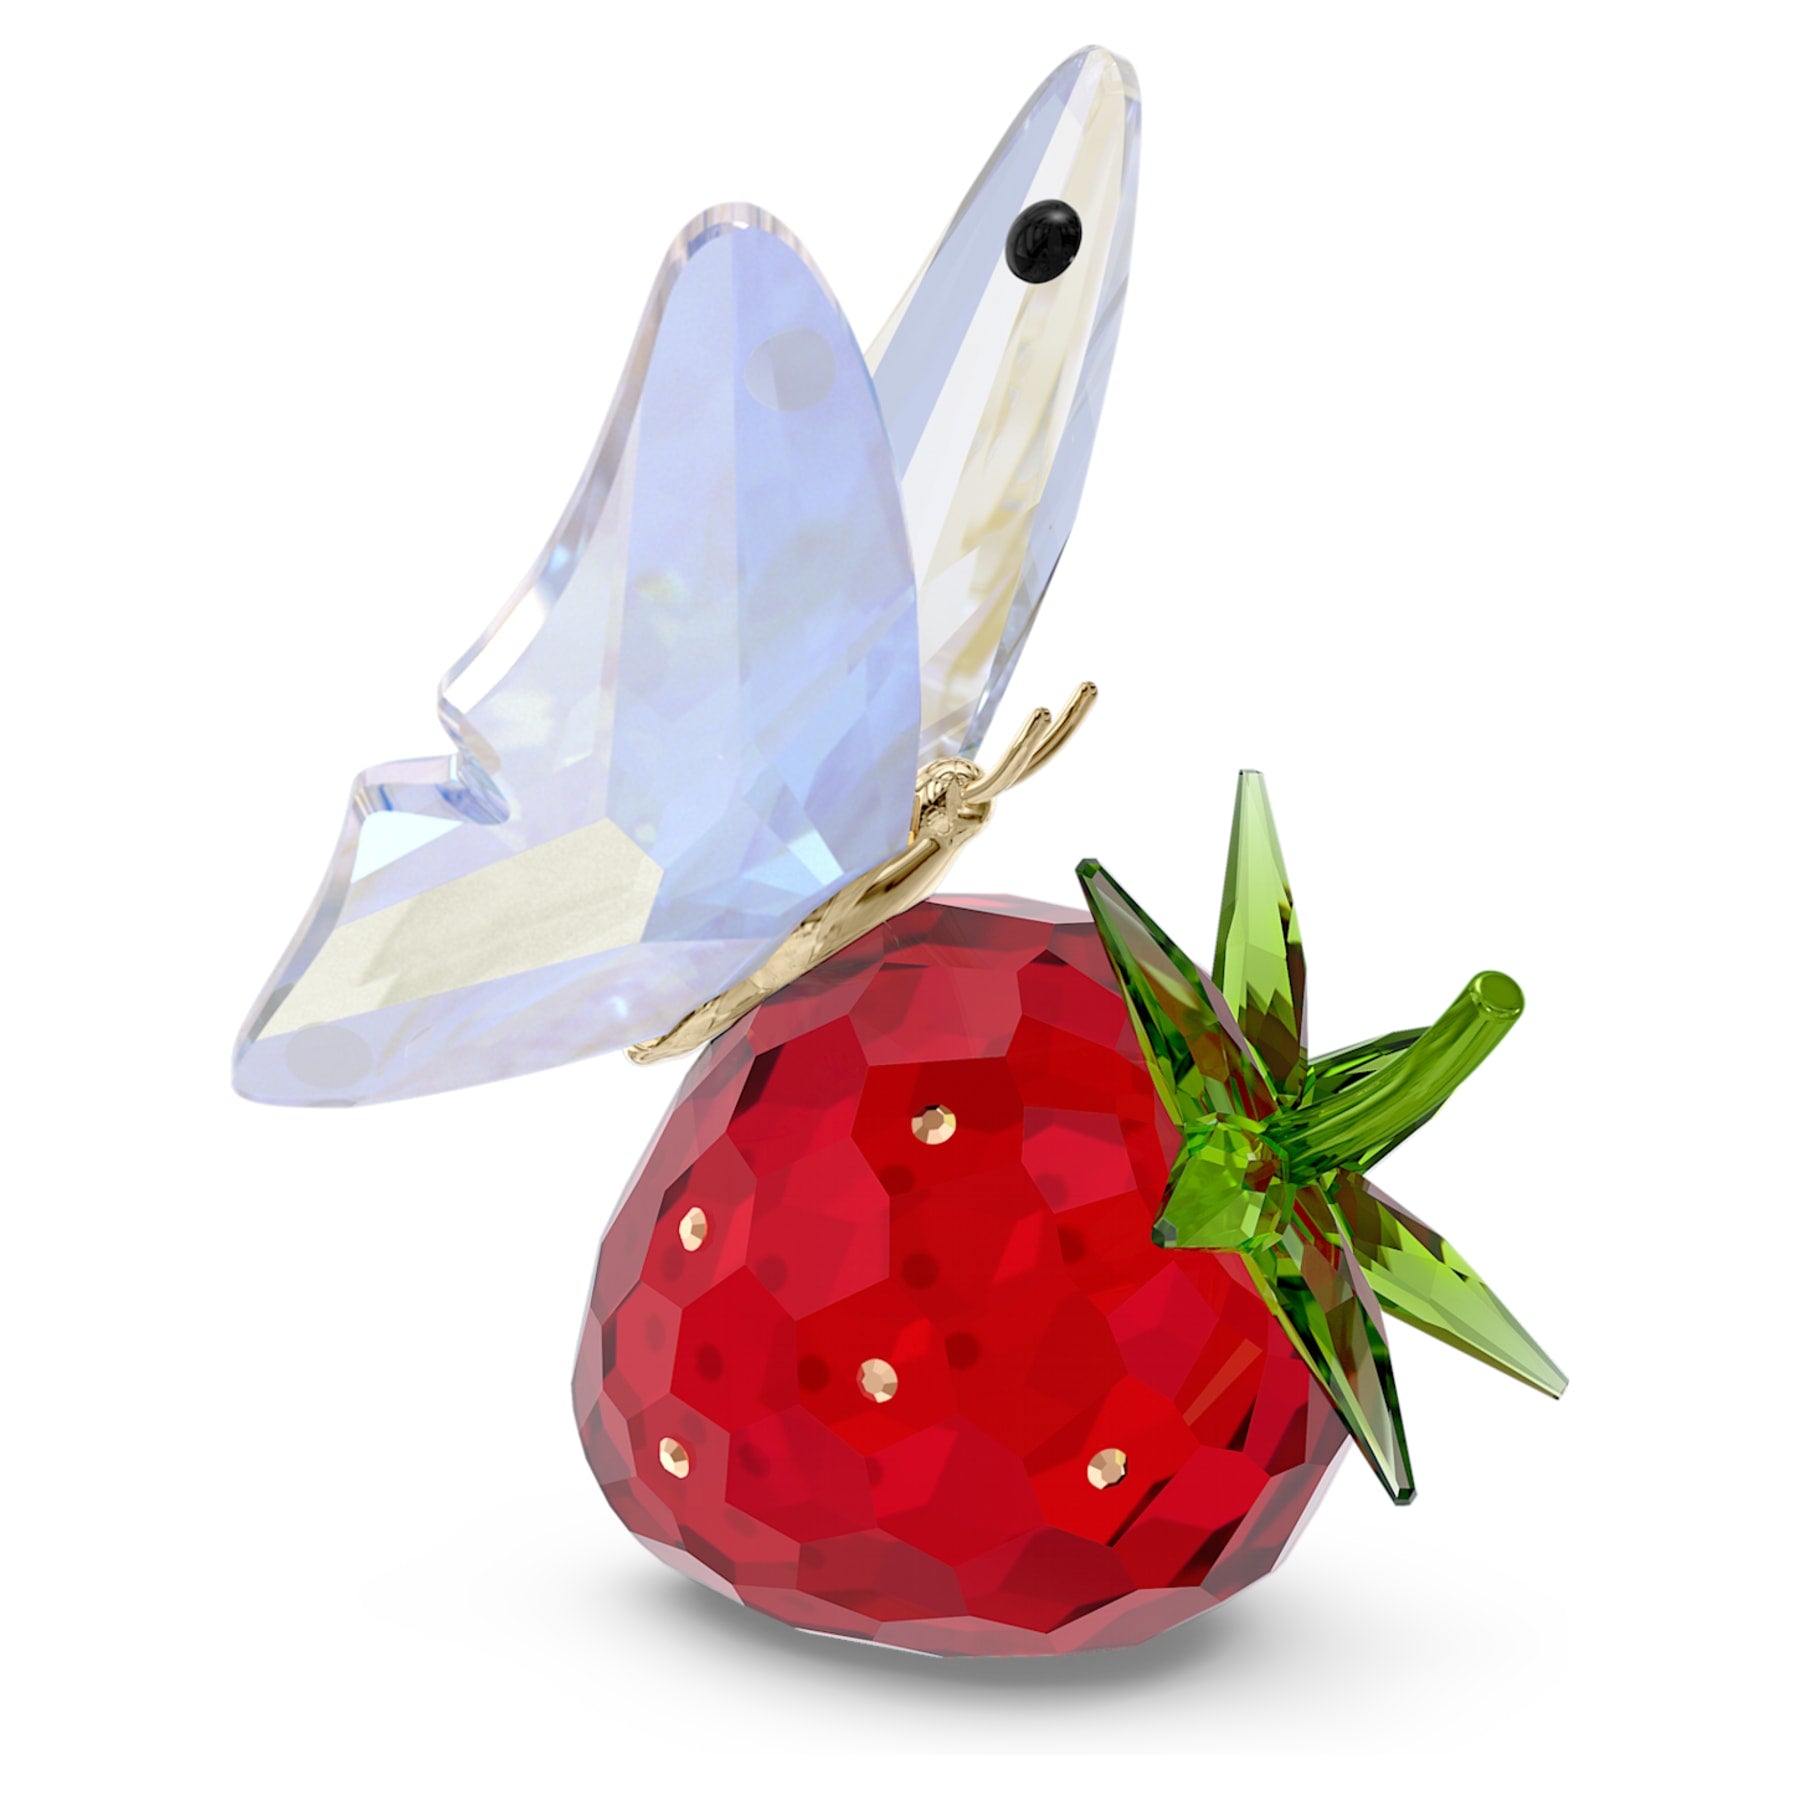 Idyllia - Schmetterling und Erdbeere - Figur - Swarovski